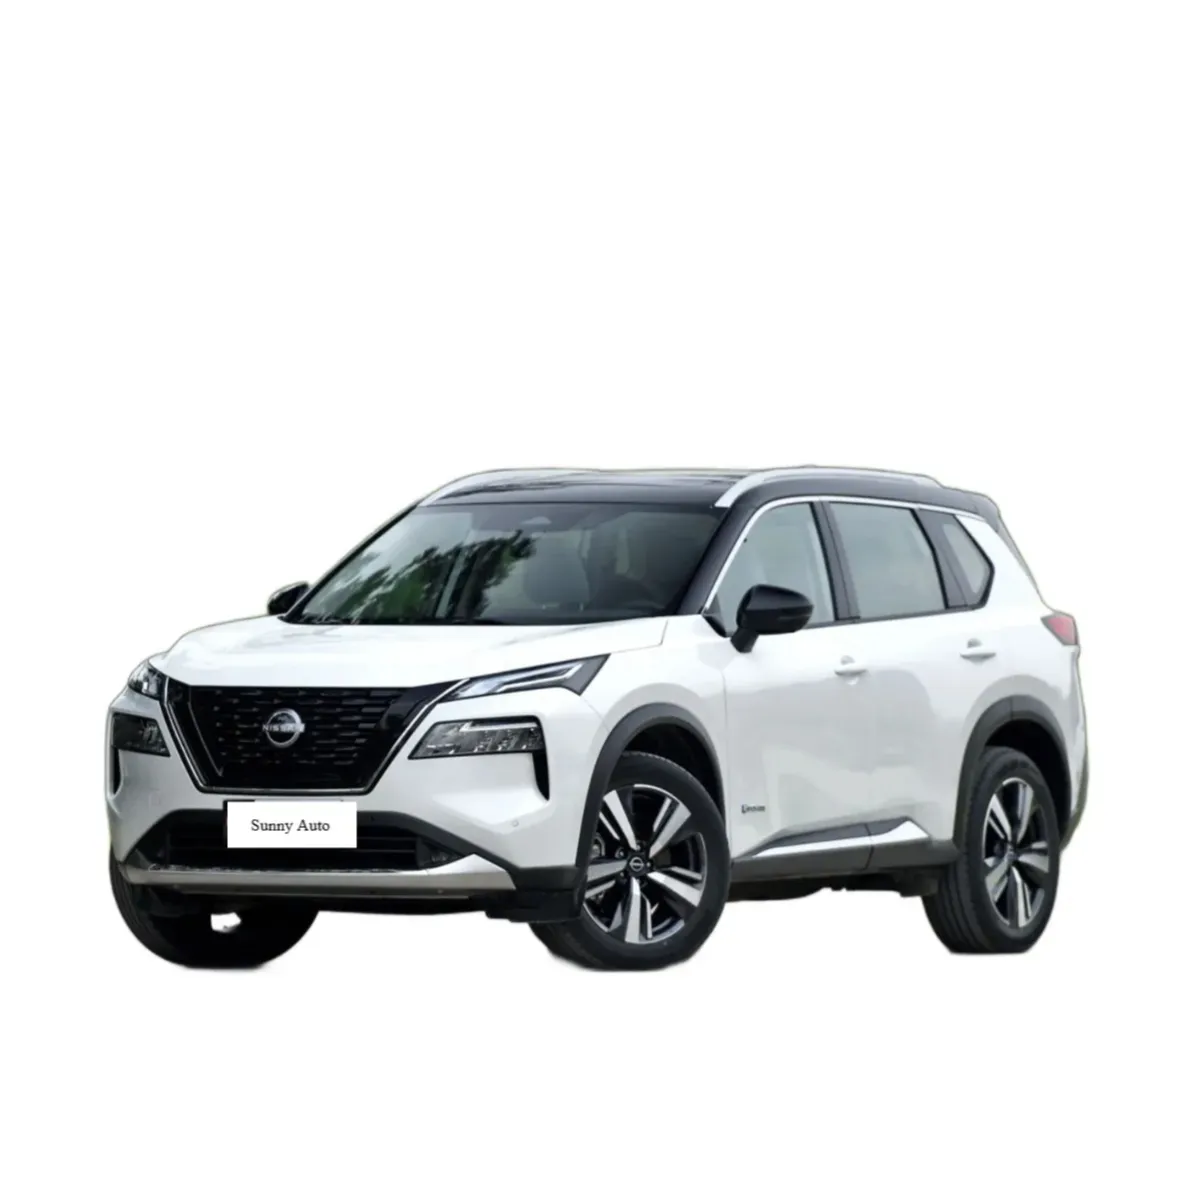 2023 Dongfeng Nissan X-trail SUV veicoli 0km auto usate benzina automobili a buon mercato per la vendita auto giapponese